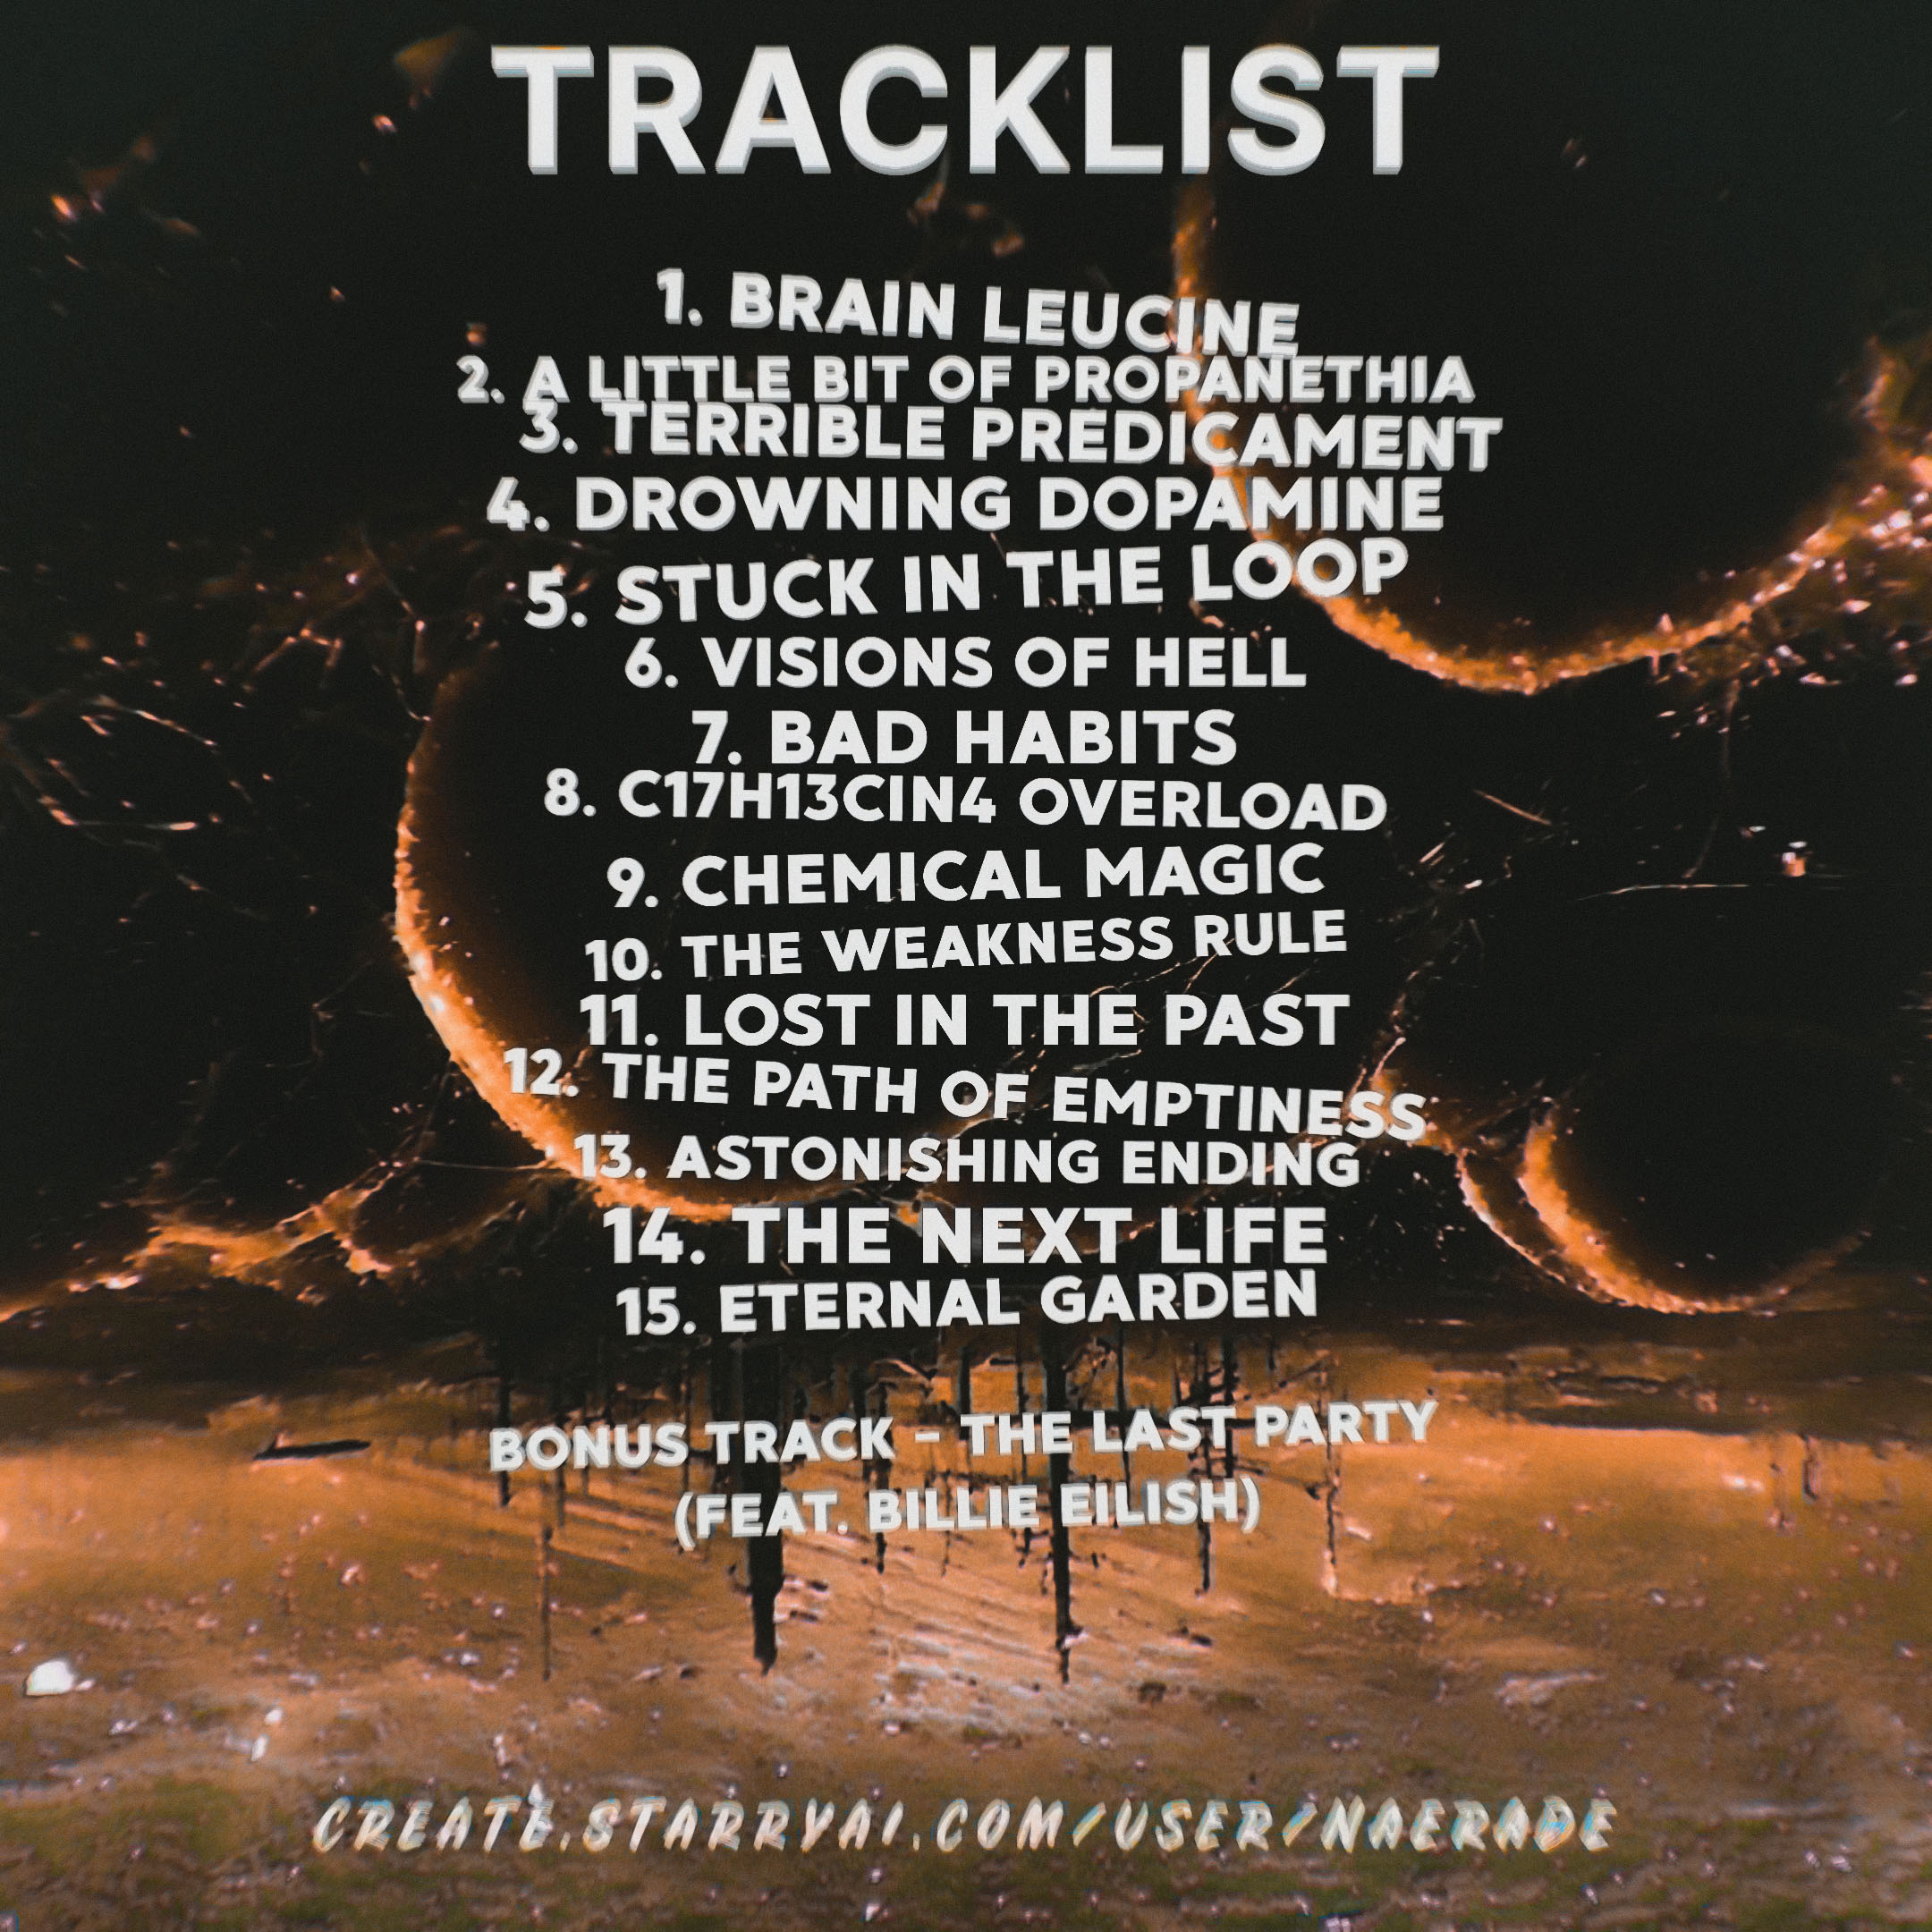 Diseño de la portada de la lista de canciones de un grupo de música electrónica